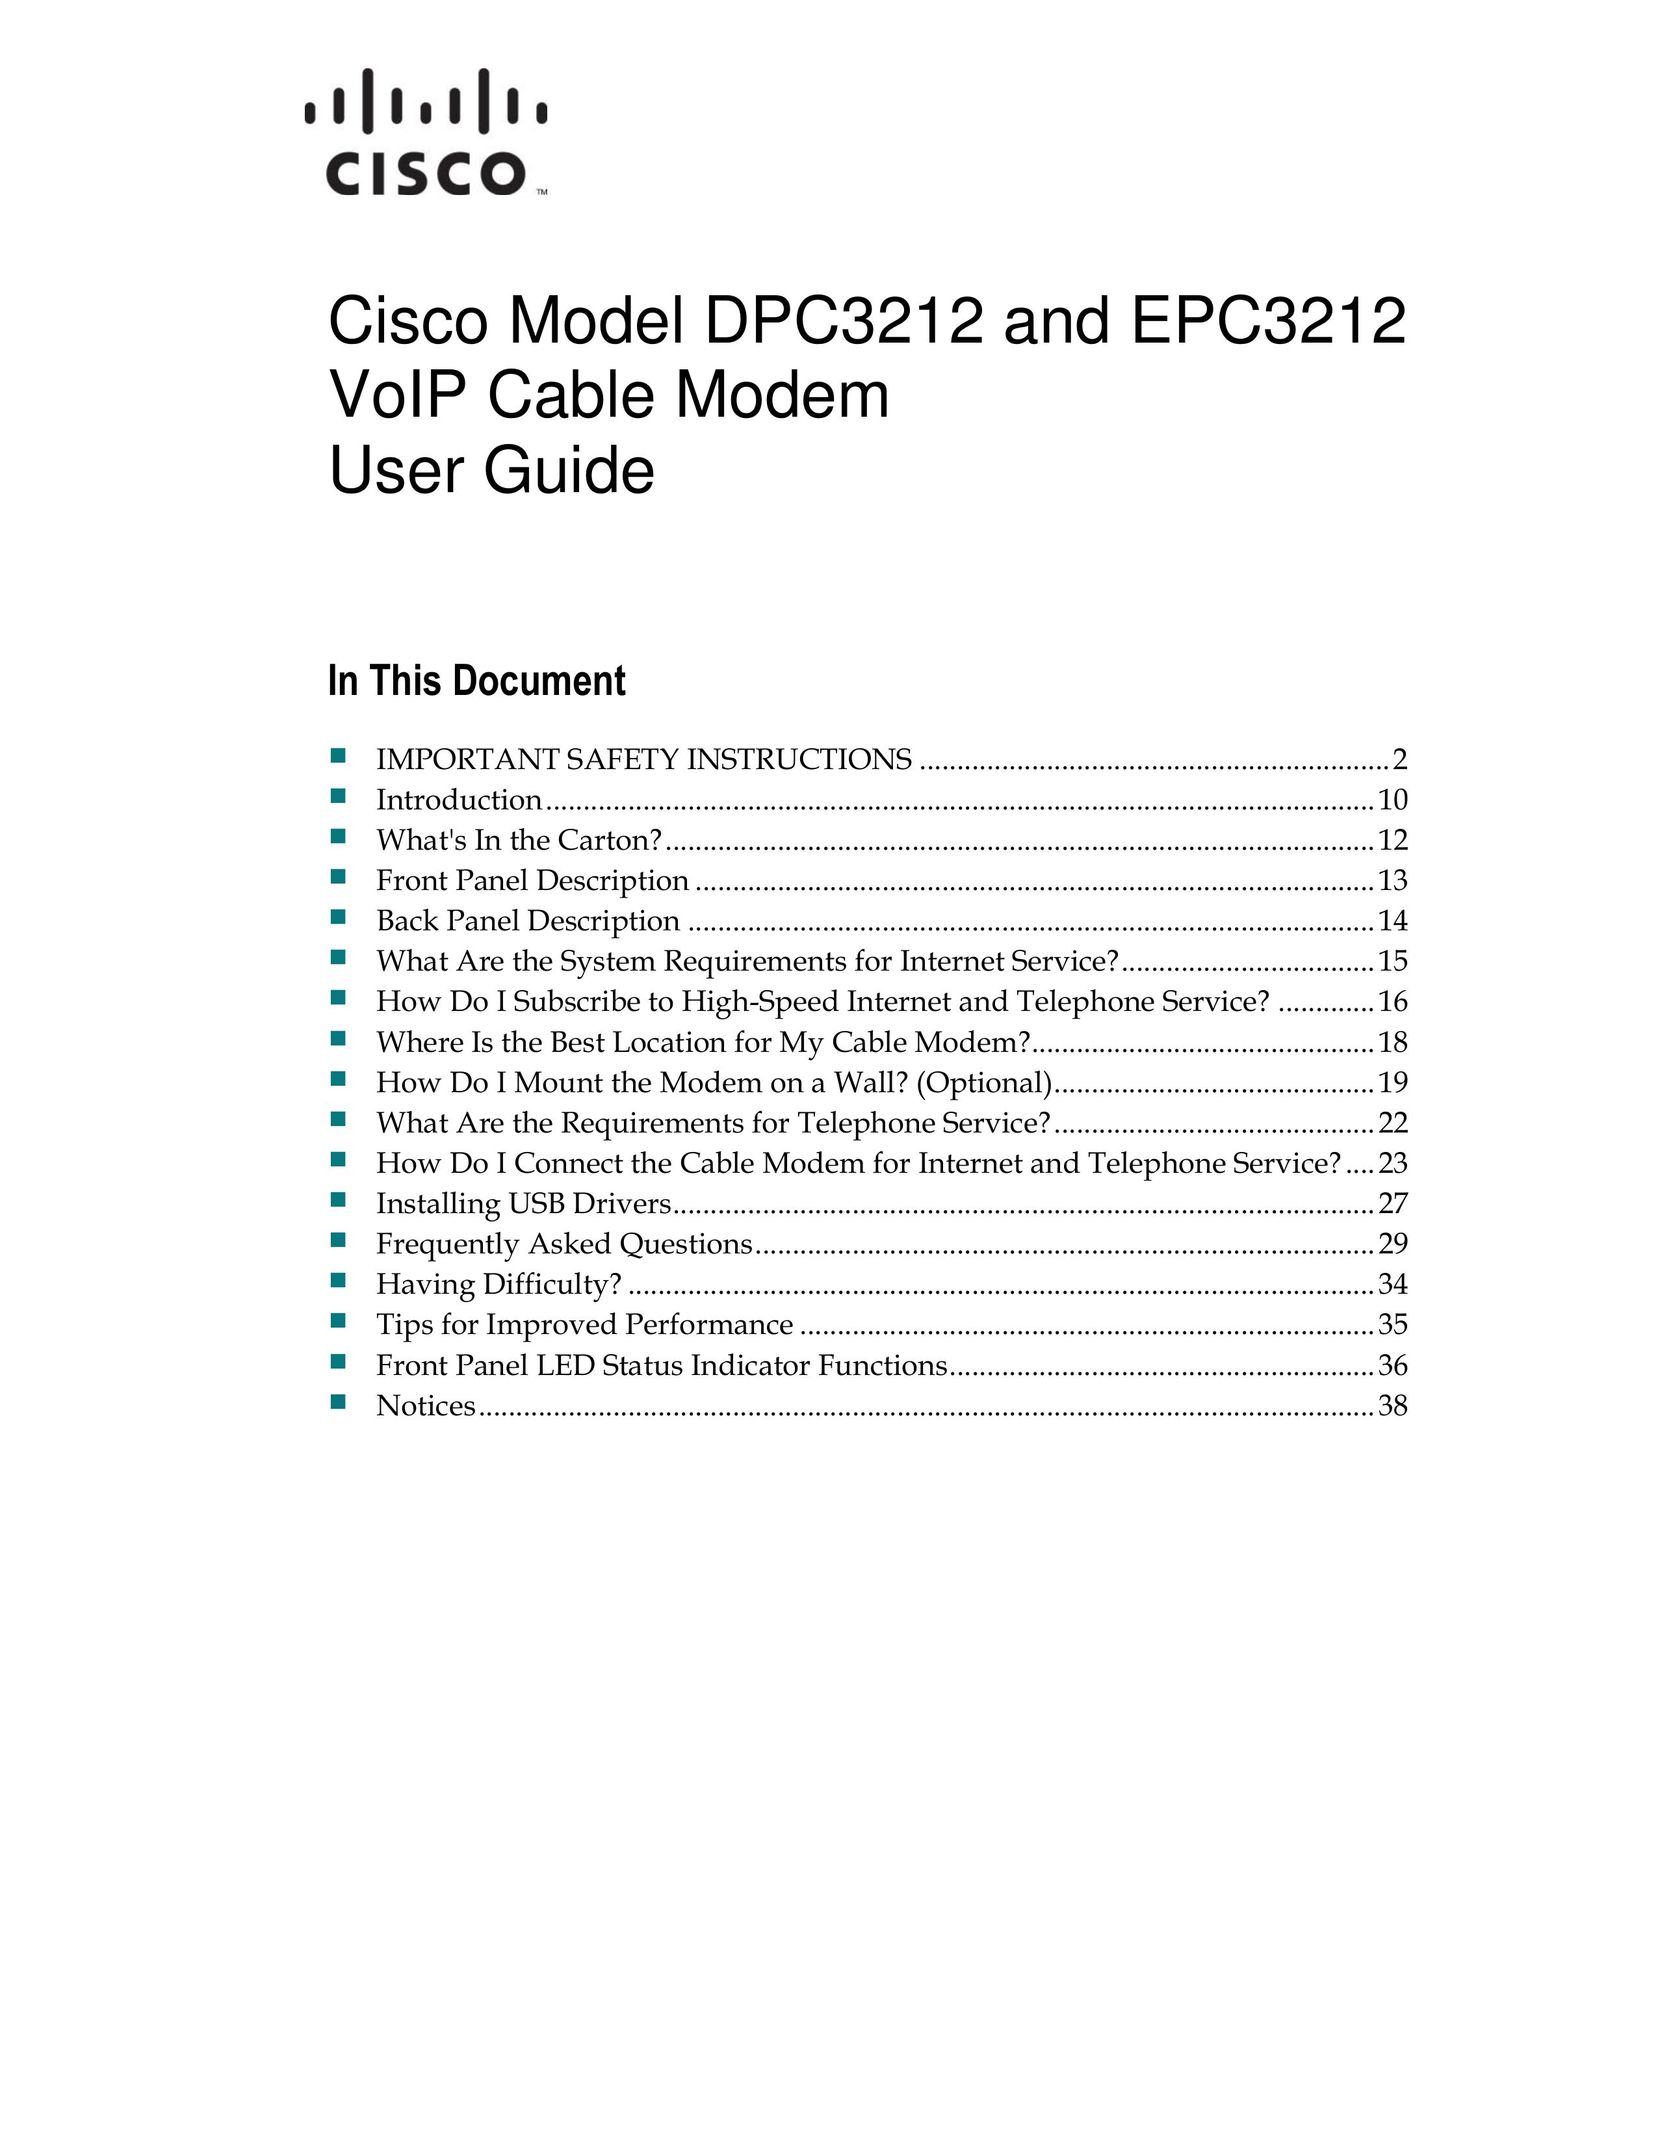 Cisco Systems DPC3212 Modem User Manual